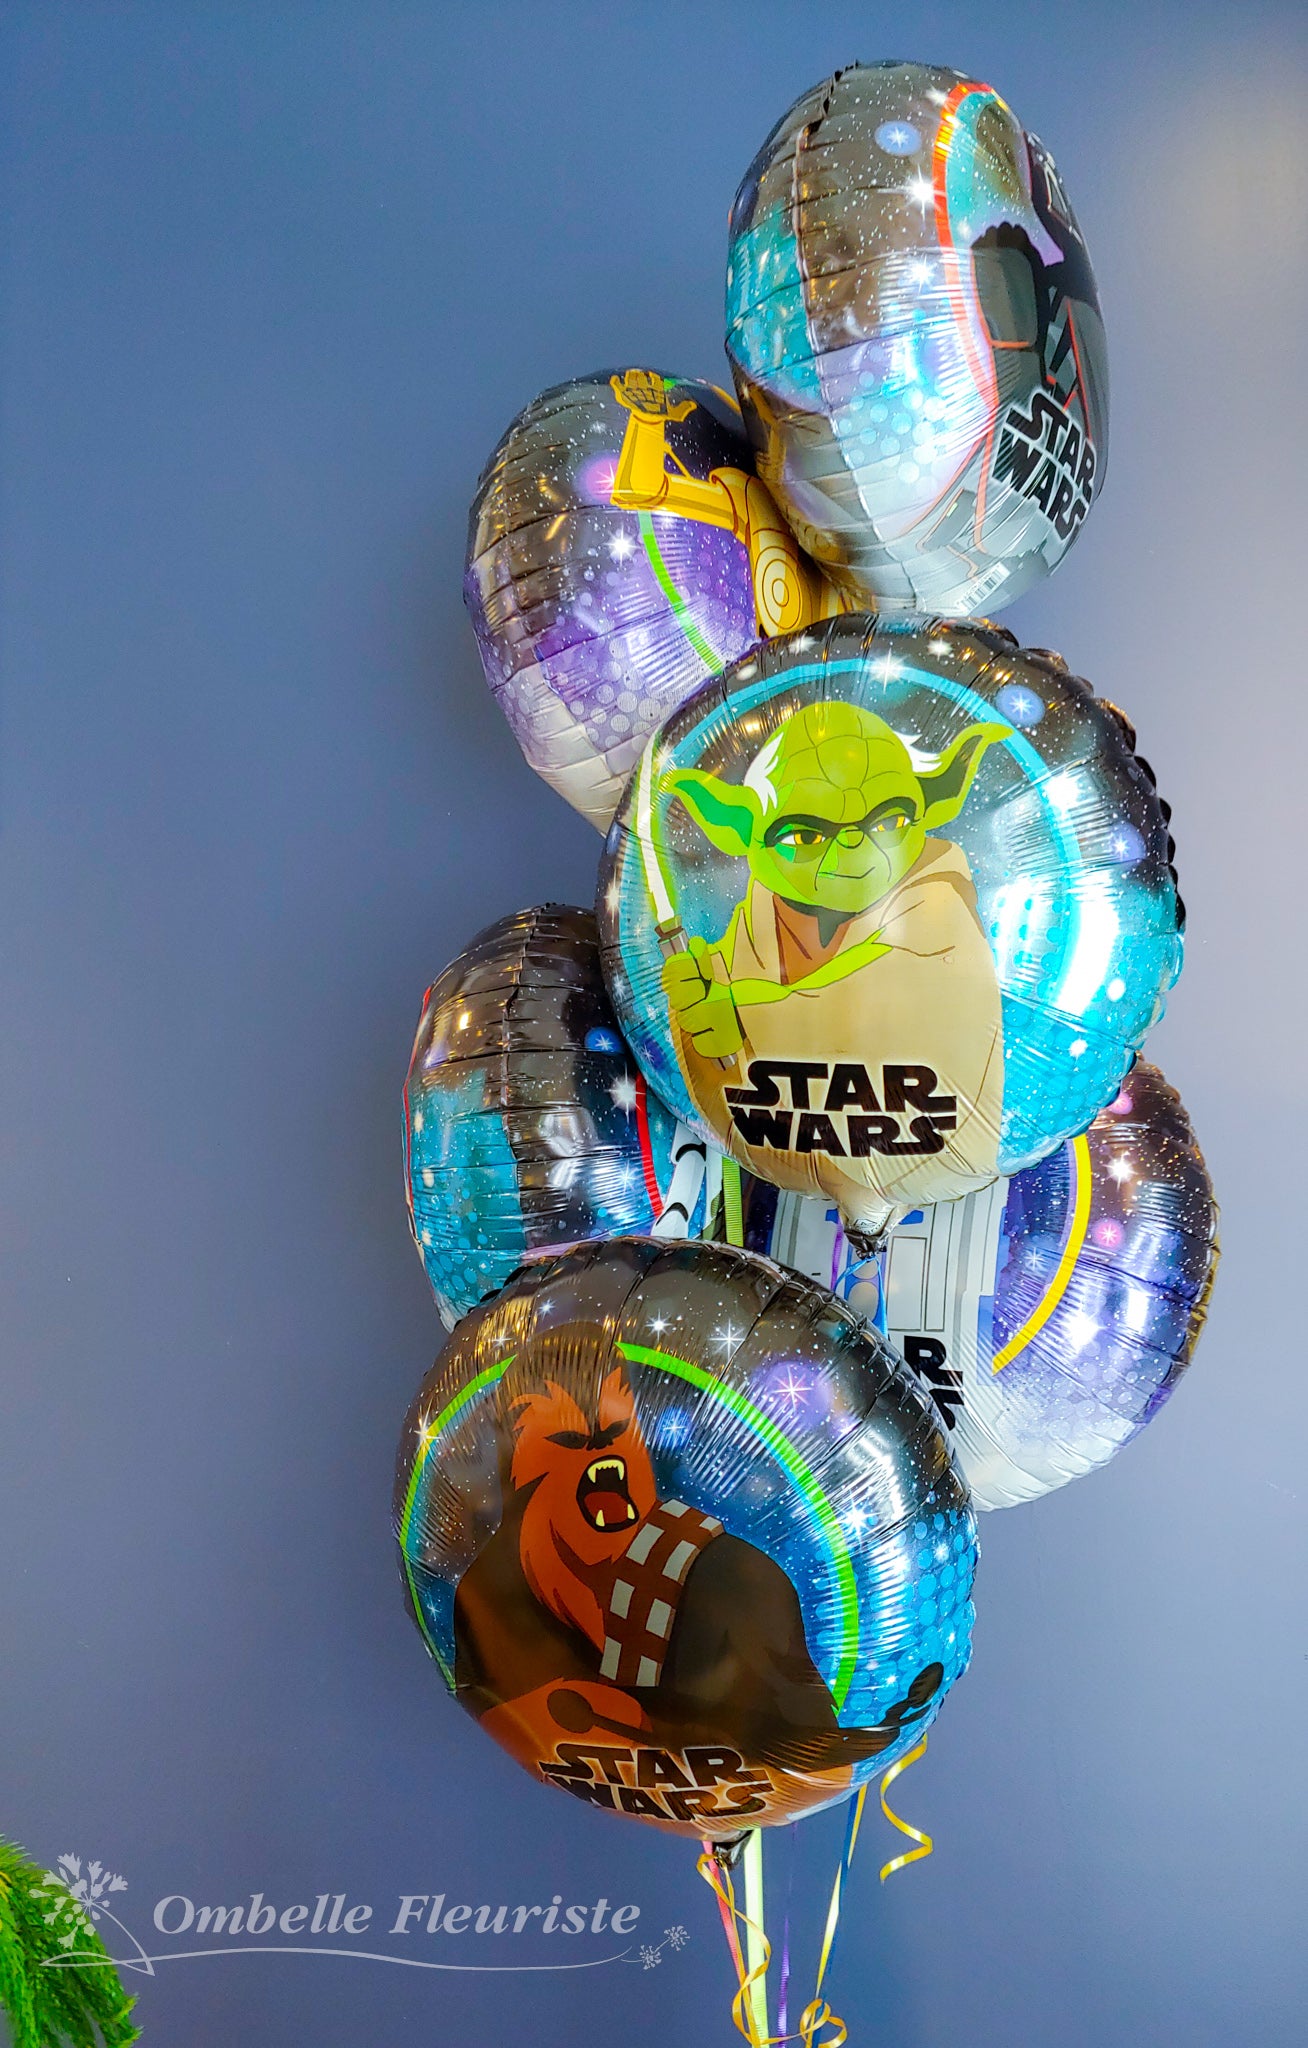 Ombelle Fleuriste - Bouquet de ballons Star Wars